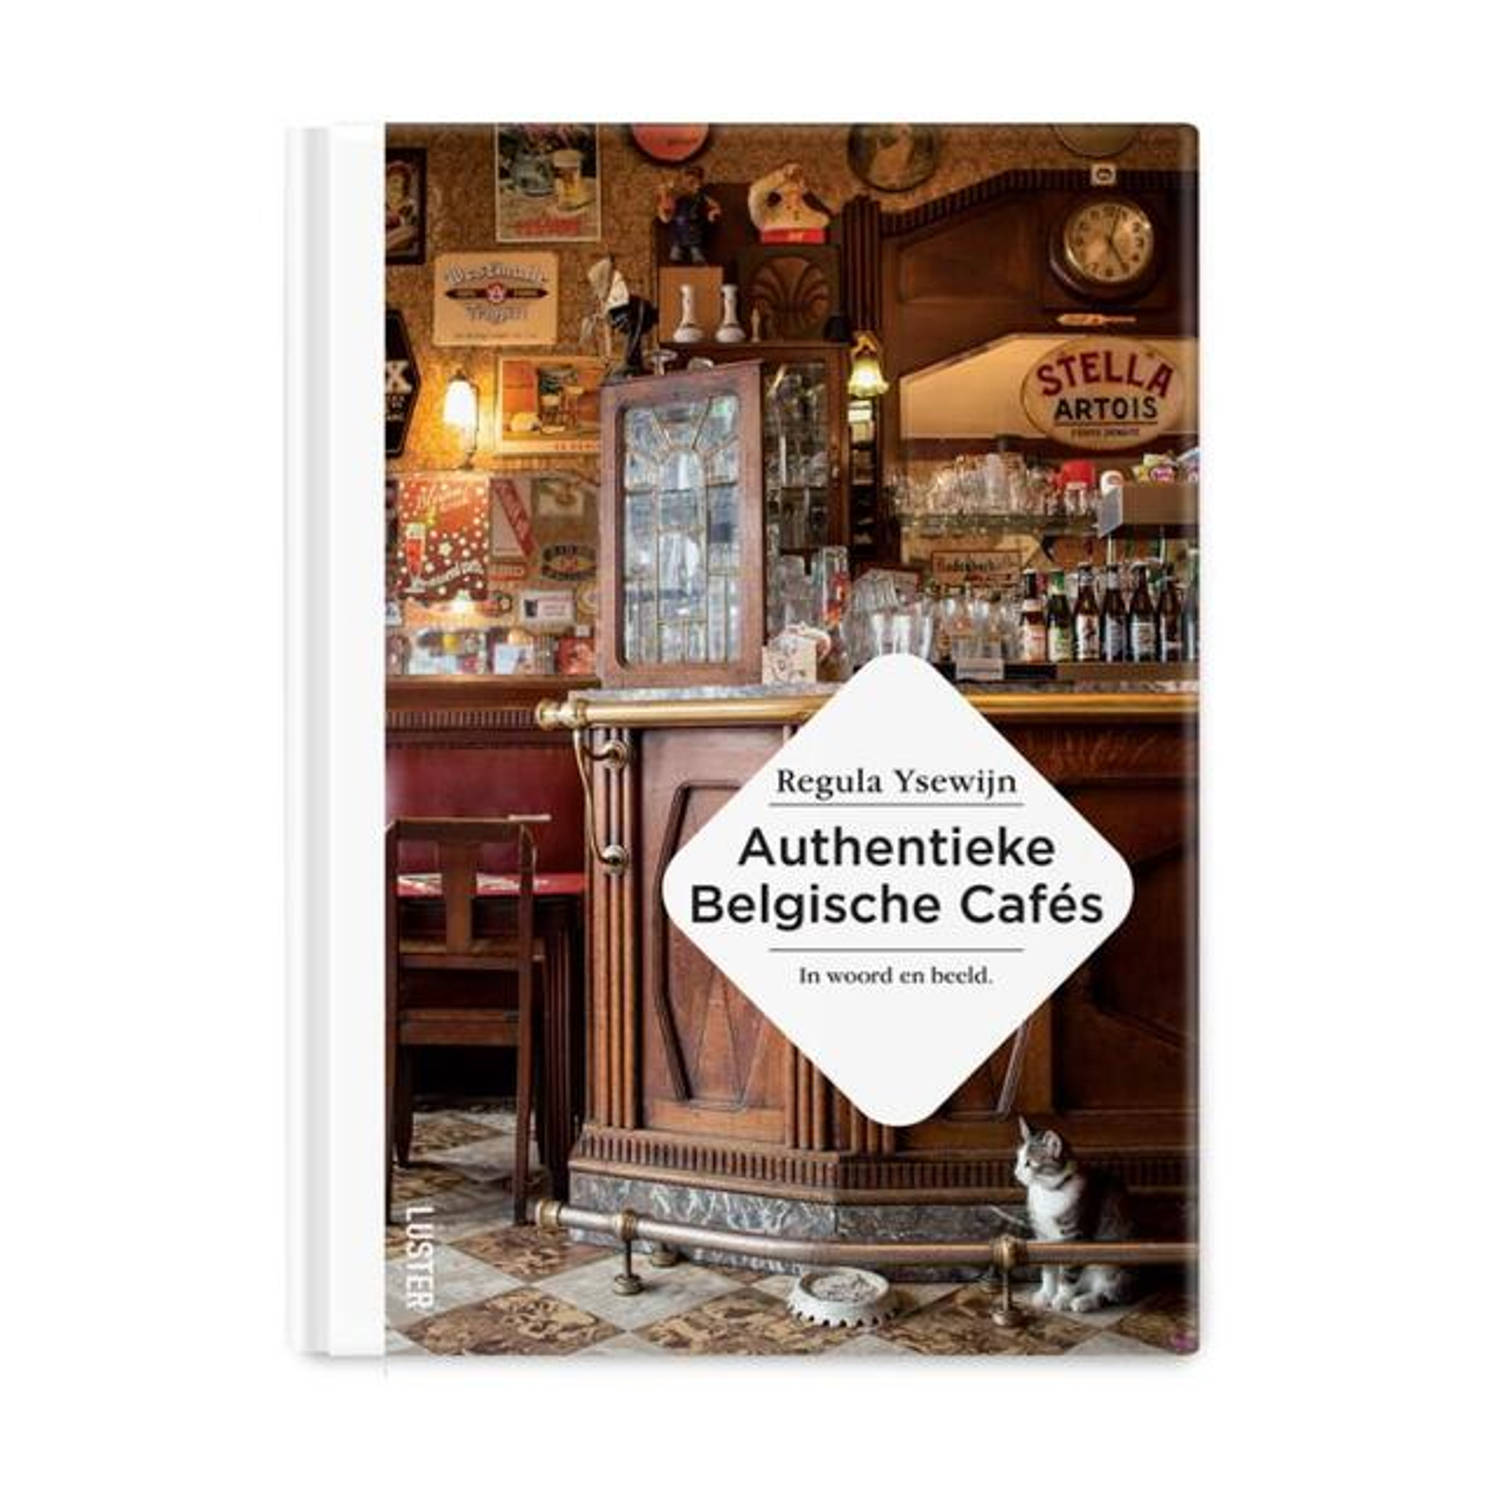 Authentieke Belgische Cafés